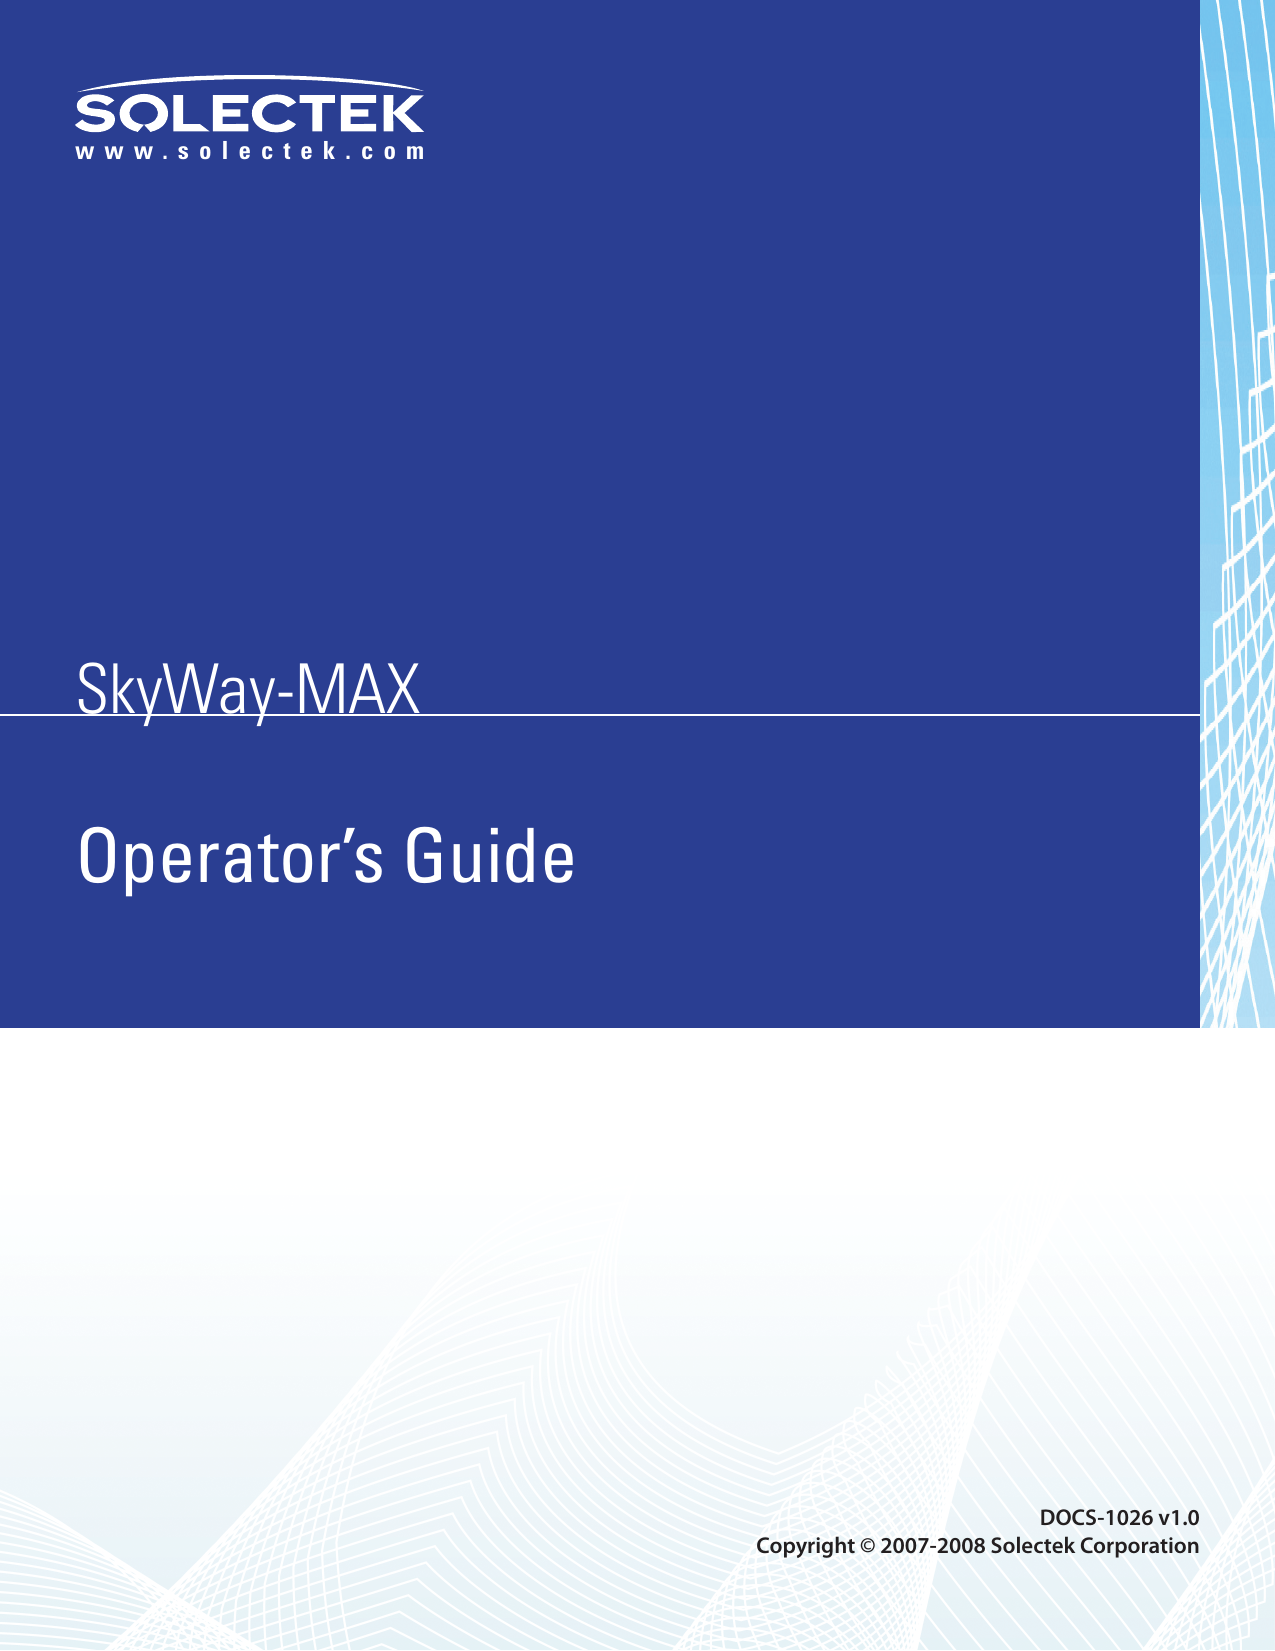 SkyWay-MAXSkyWay-MAXwww.solectek.comOperator’s Guide  DOCS-1026 v1.0Copyright © 2007-2008 Solectek Corporation 